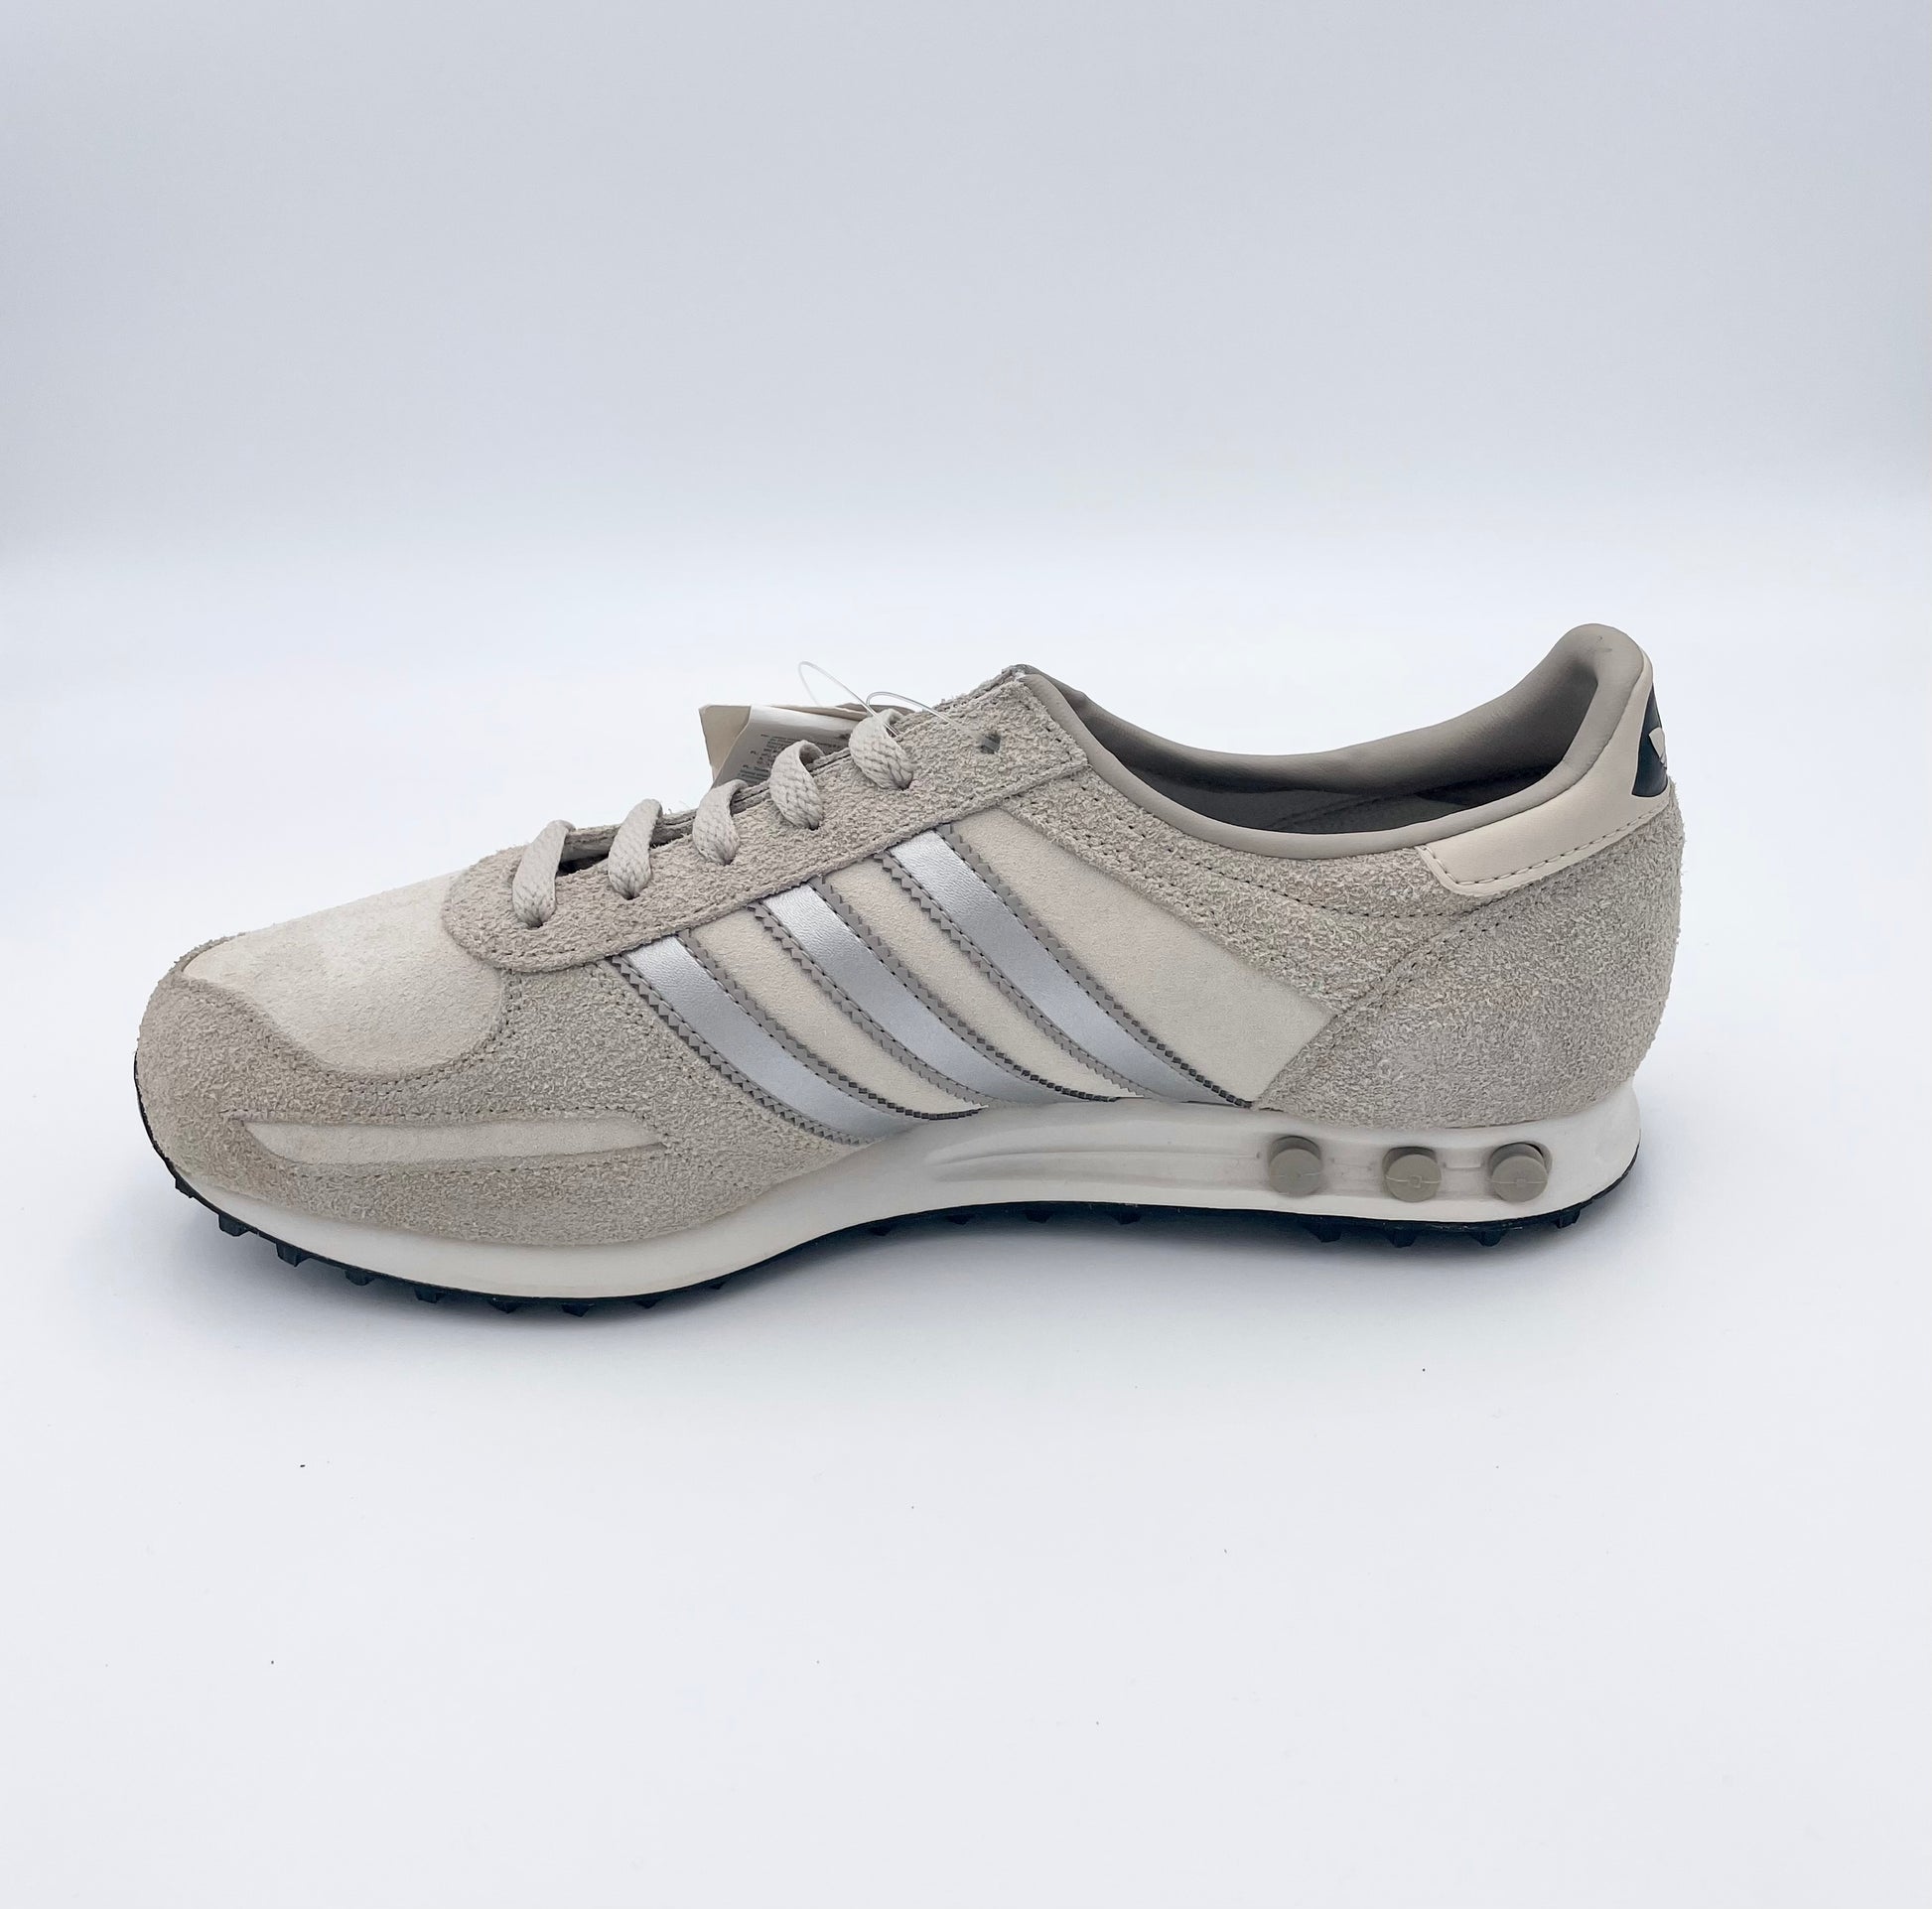 Adidas LA trainer grey/silver - Adidas